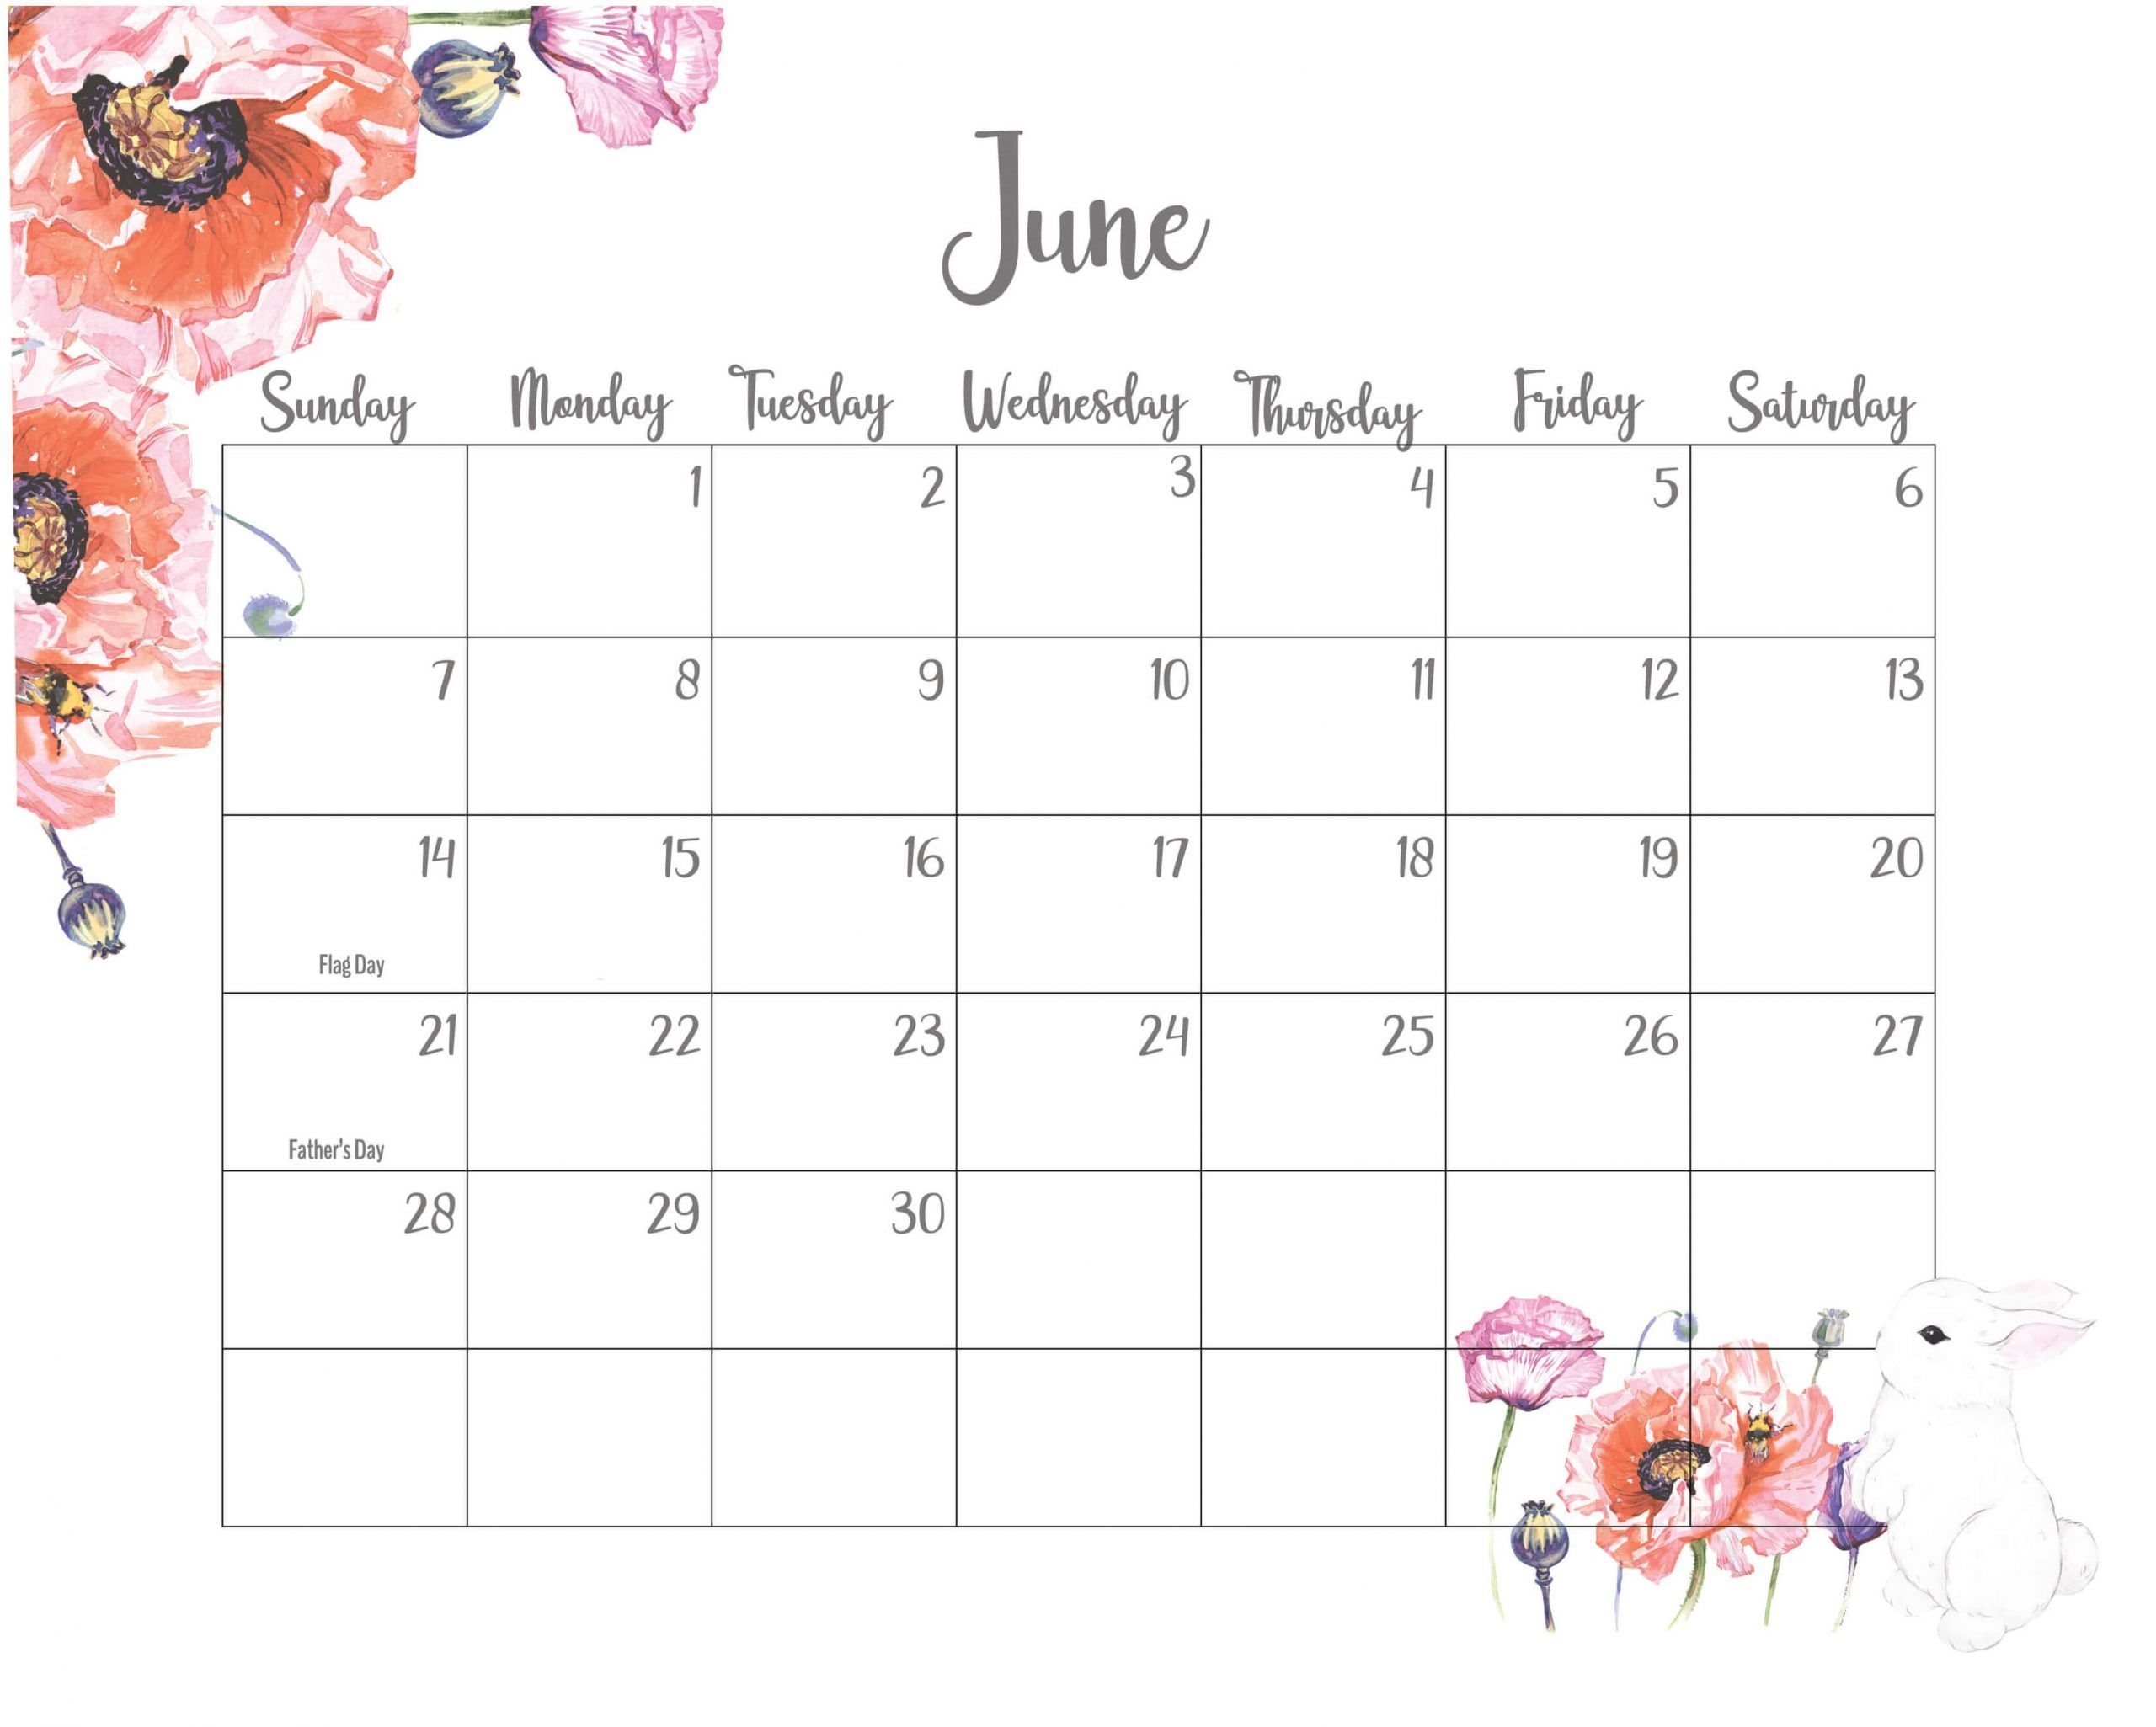 June 2020 Calendar | Calendar 2020